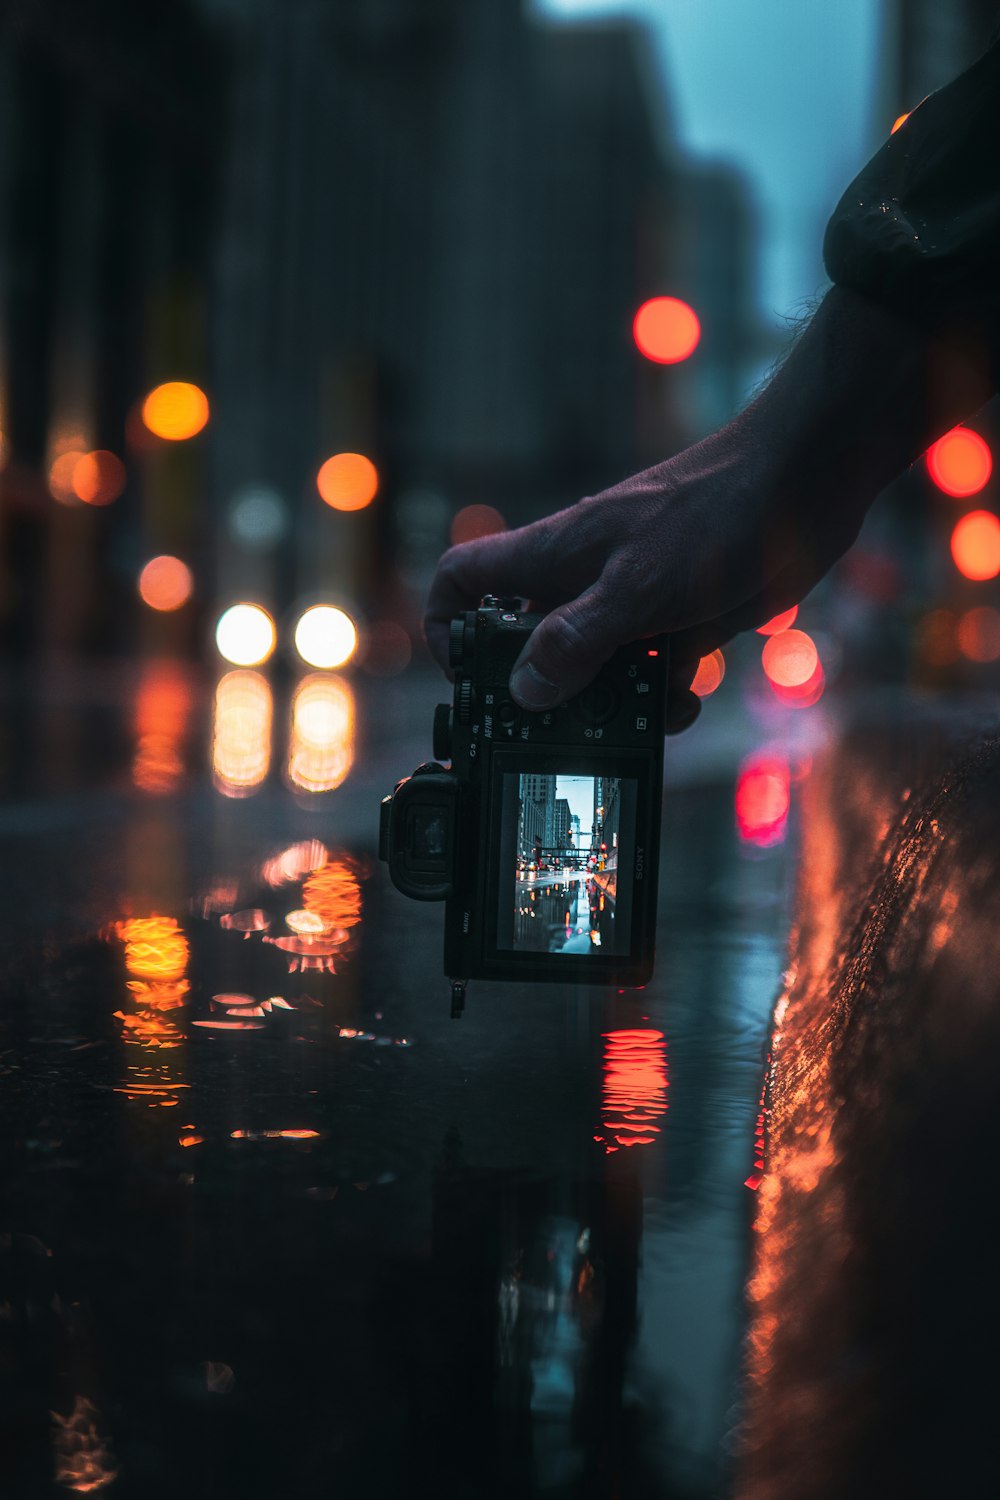 黒いデジタル一眼レフカメラを持っている人が、夜間に街の明かりの写真を撮る